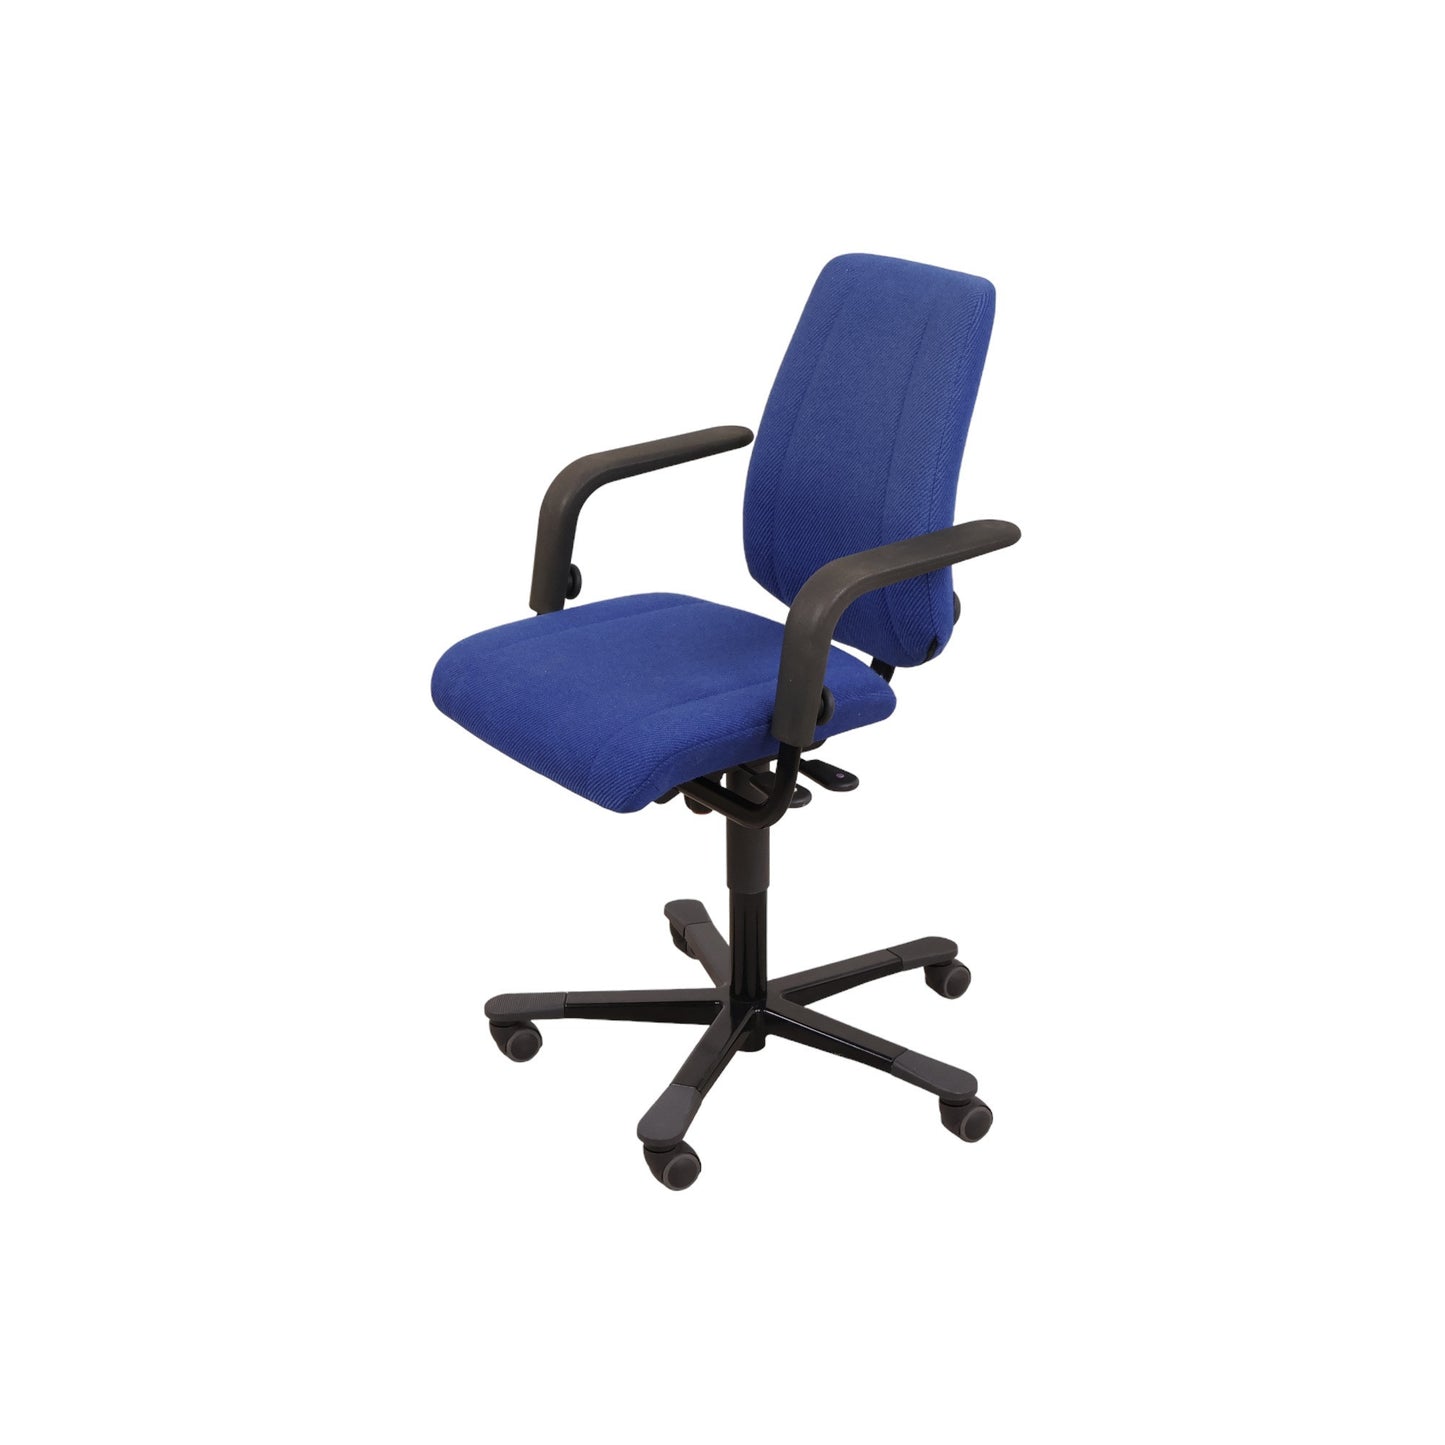 Håg Credo kontorstol i fargen blå